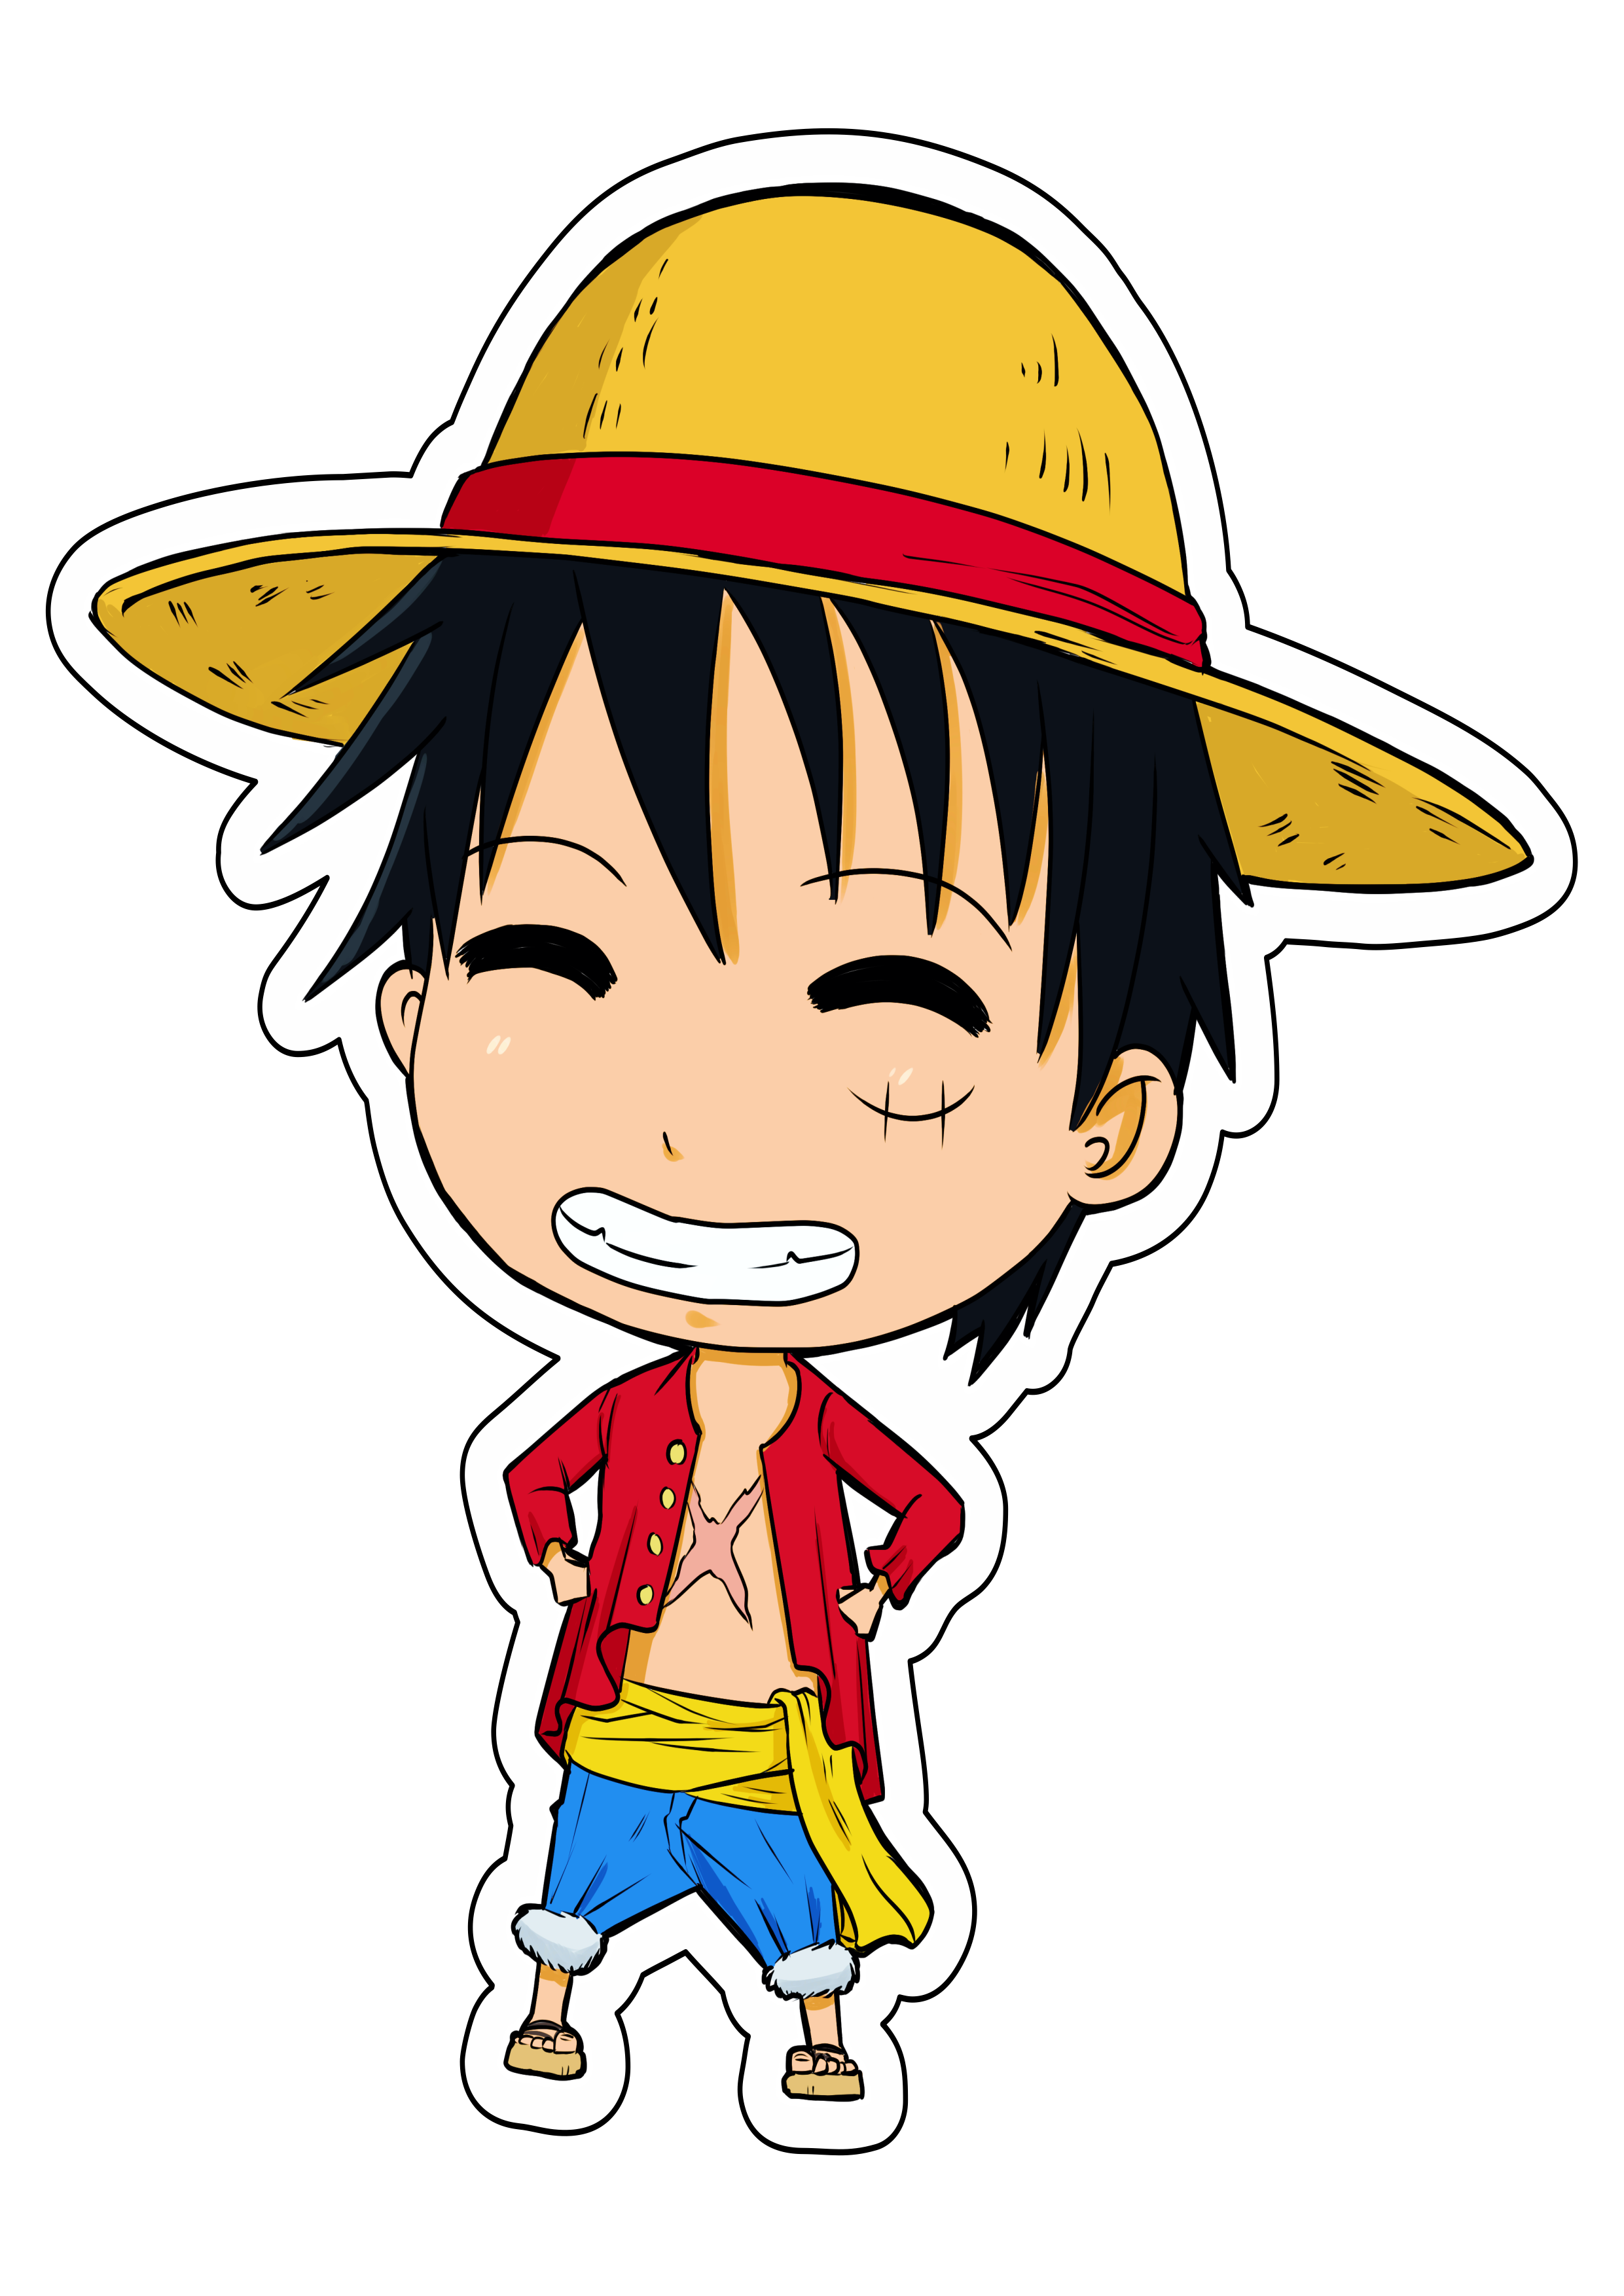 Desenho Animado One Piece PNG Transparente [download] - Designi